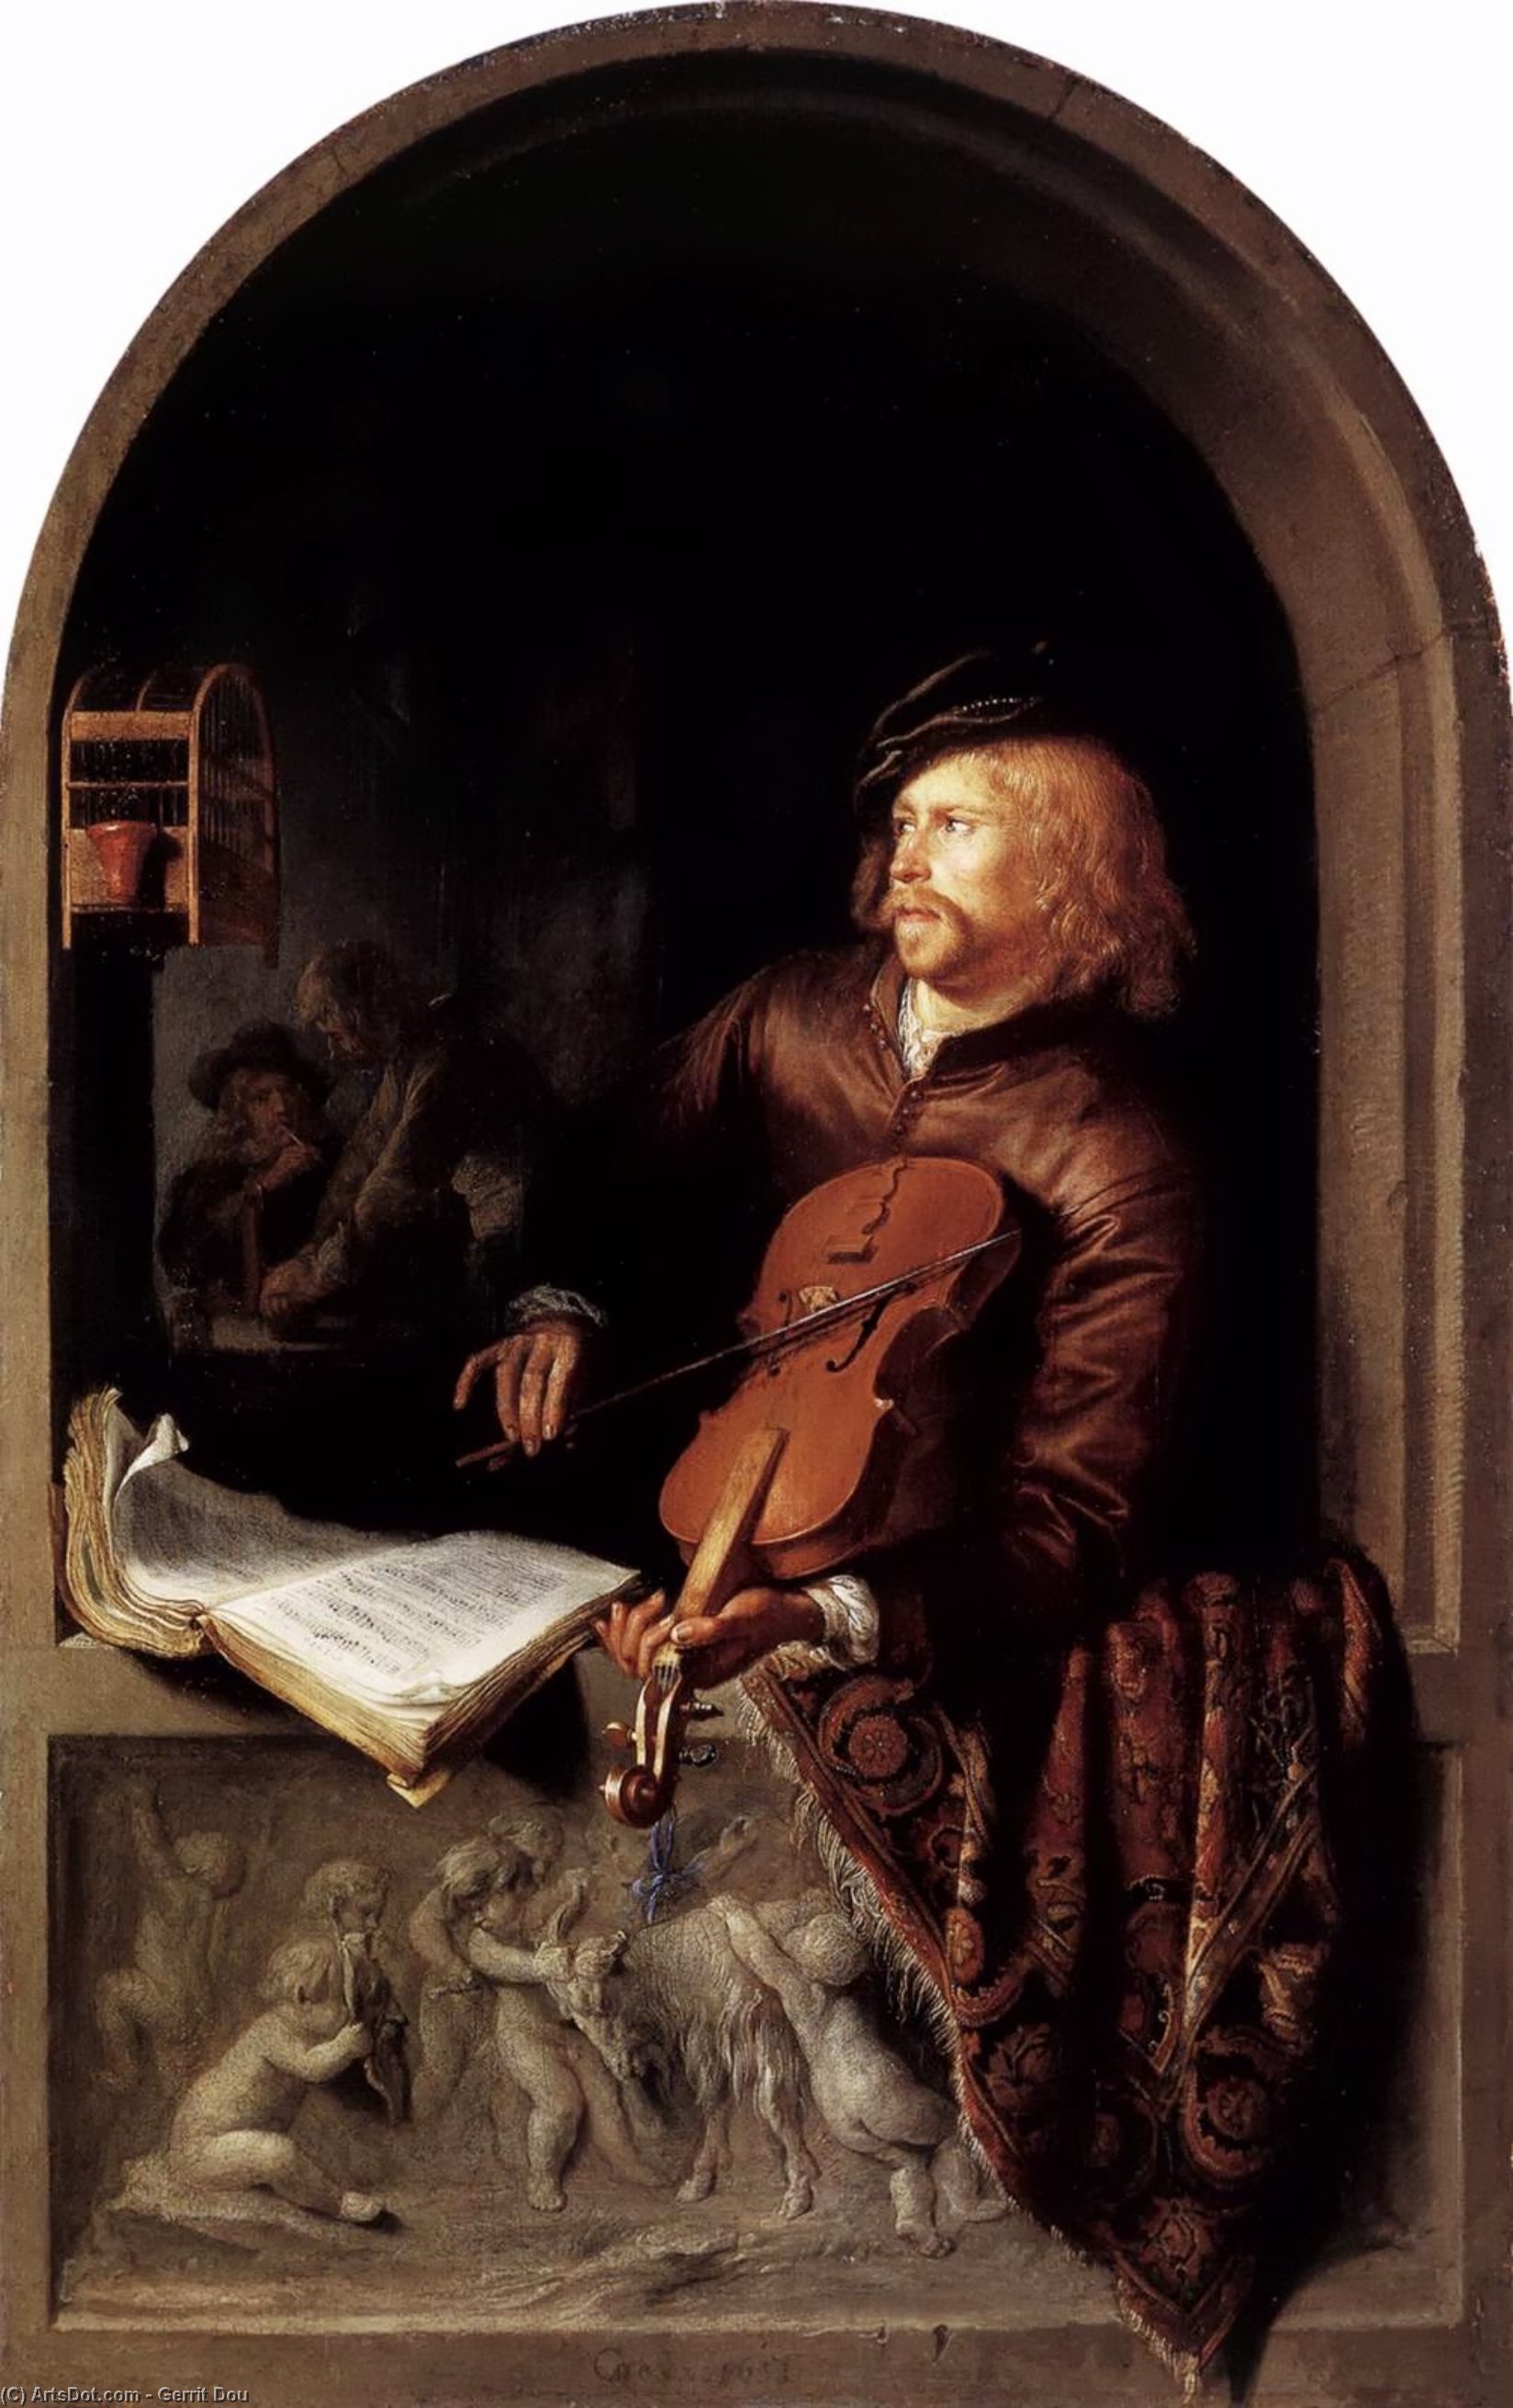 Comprar Reproducciones De Arte Del Museo Violon Player, 1653 de Gerrit (Gérard) Dou (1613-1675, Netherlands) | ArtsDot.com